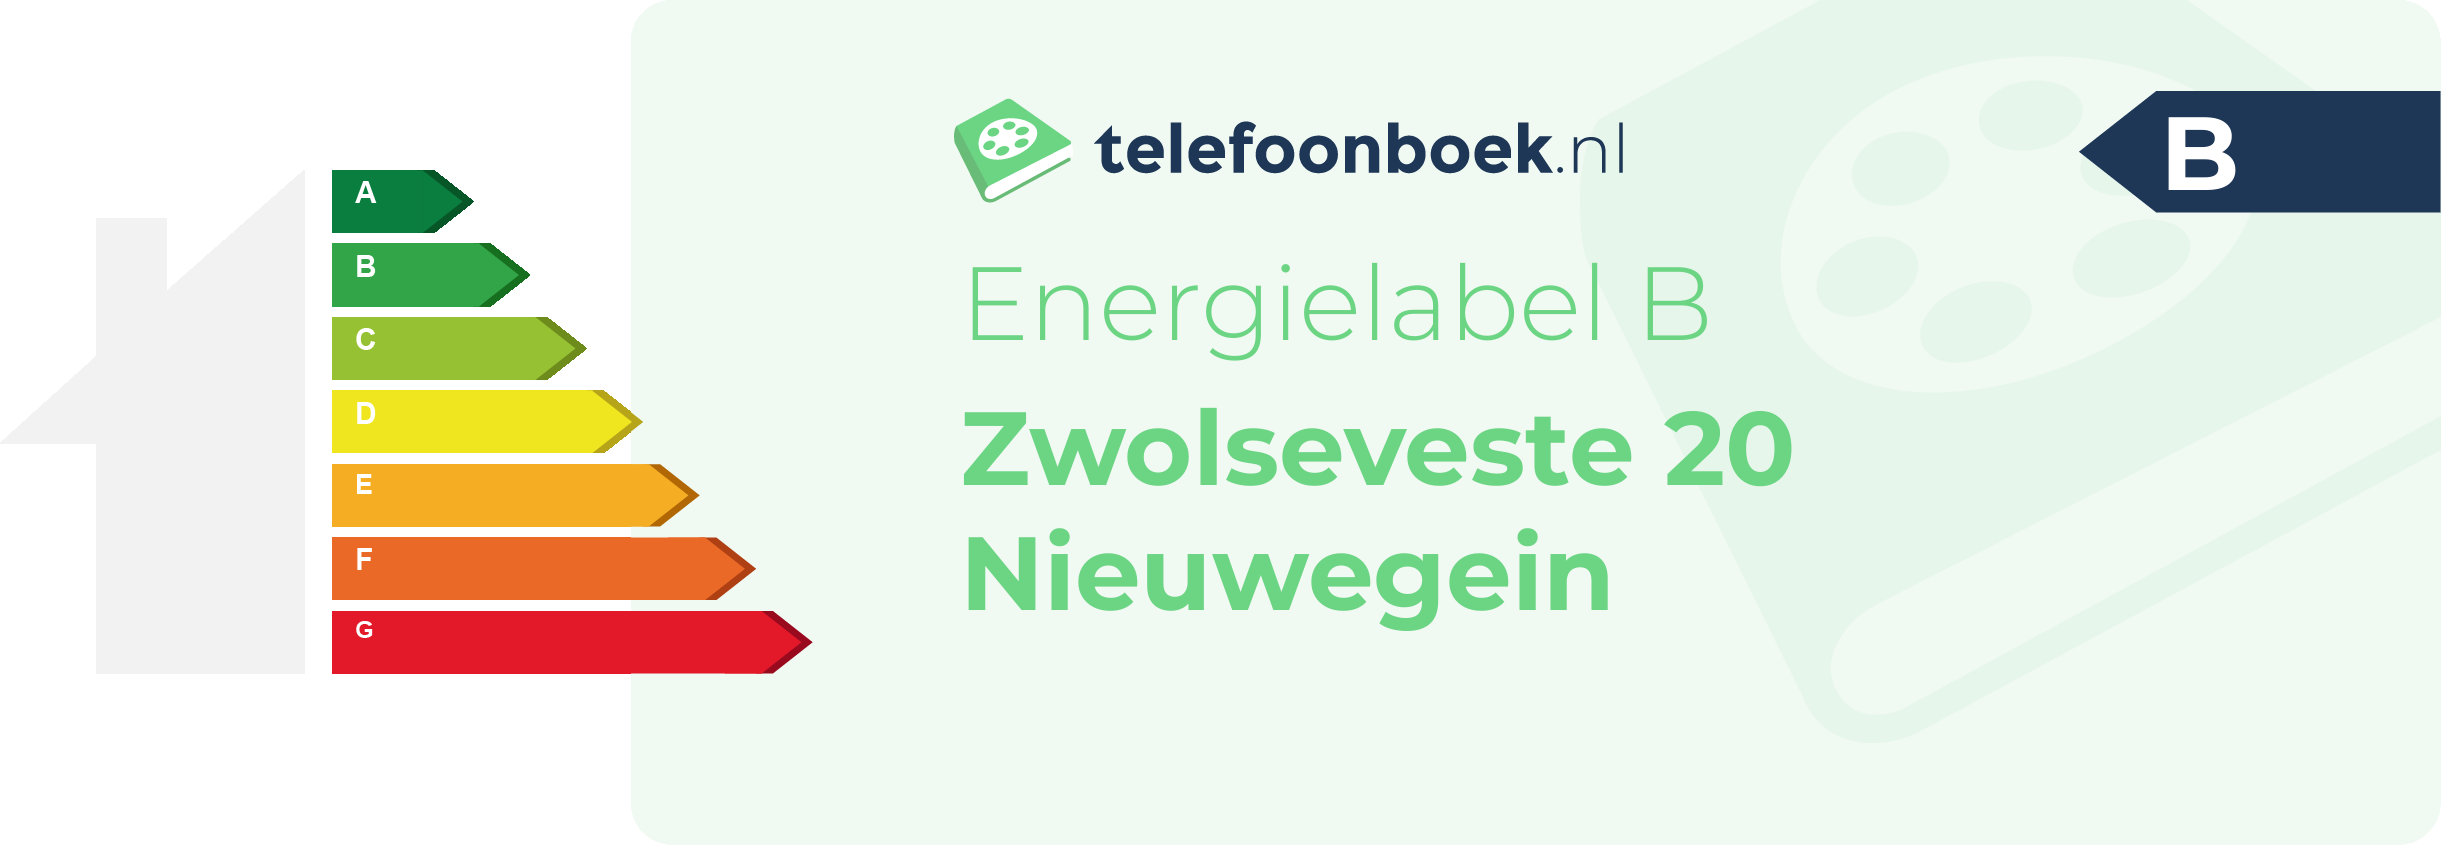 Energielabel Zwolseveste 20 Nieuwegein